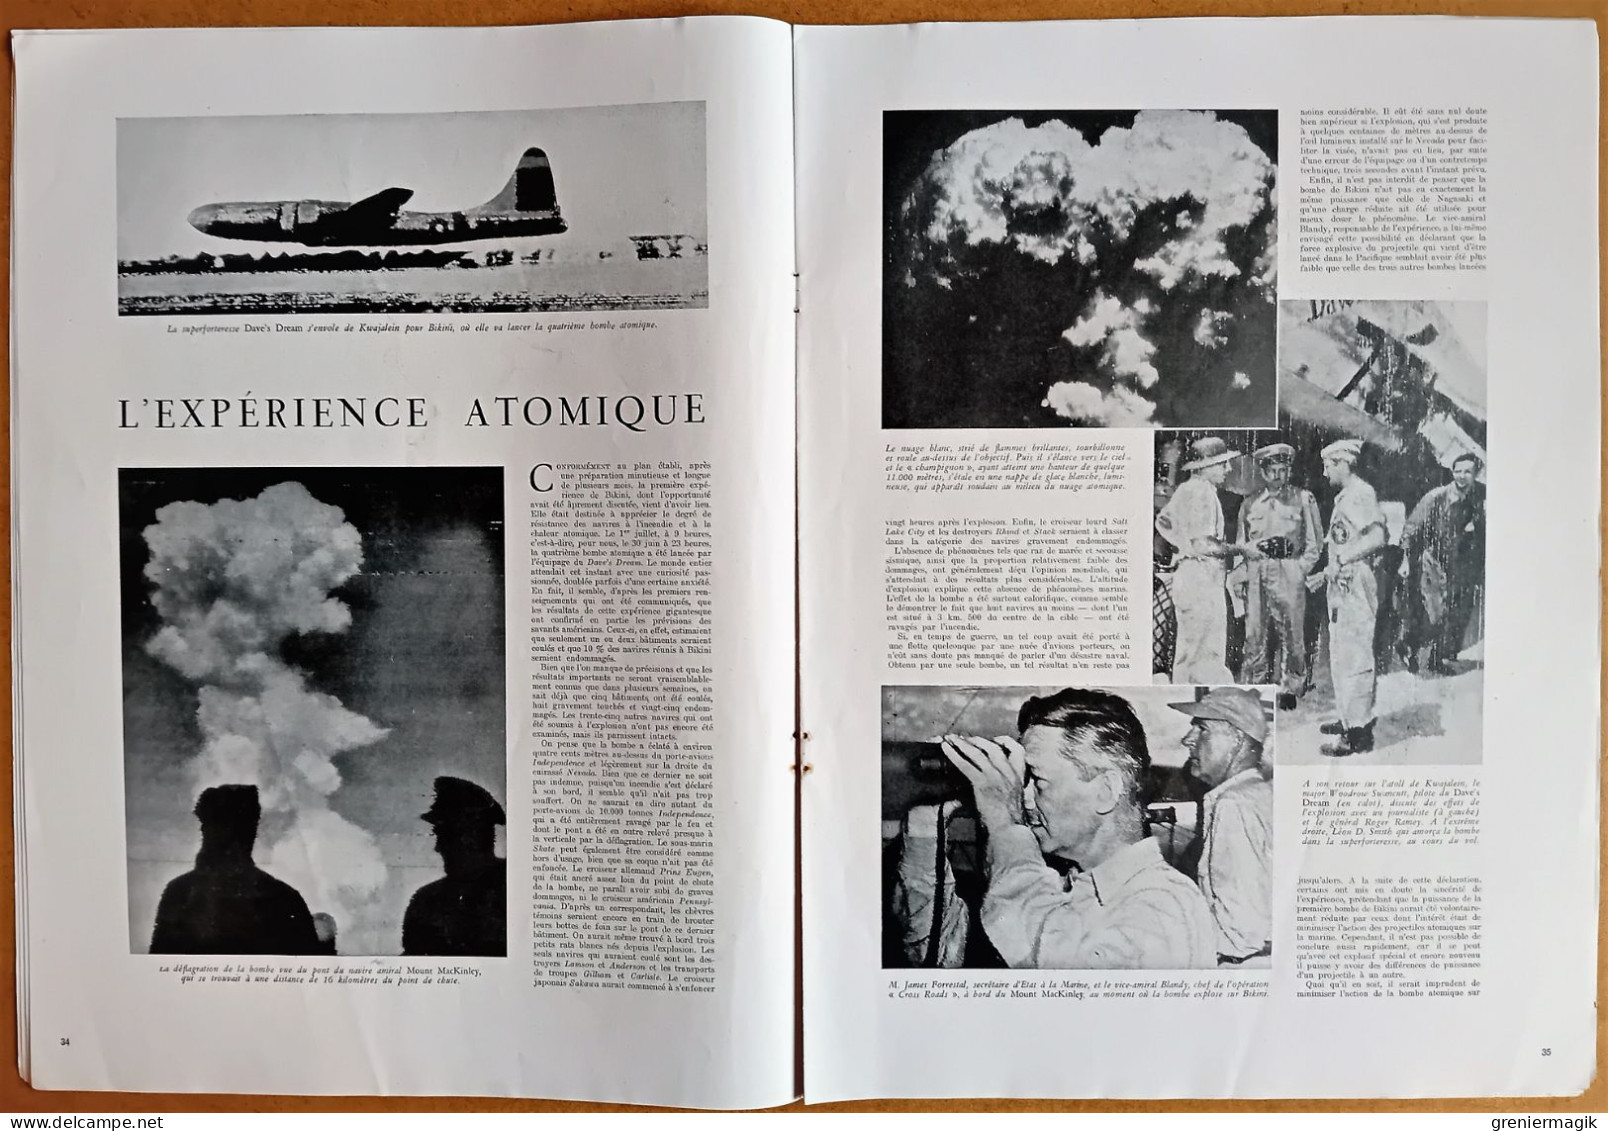 France Illustration N°41 13/07/1946 Ho Chi Minh à Versailles/La Fédération Indochinoise/Expérience atomique/USA/Abeilles